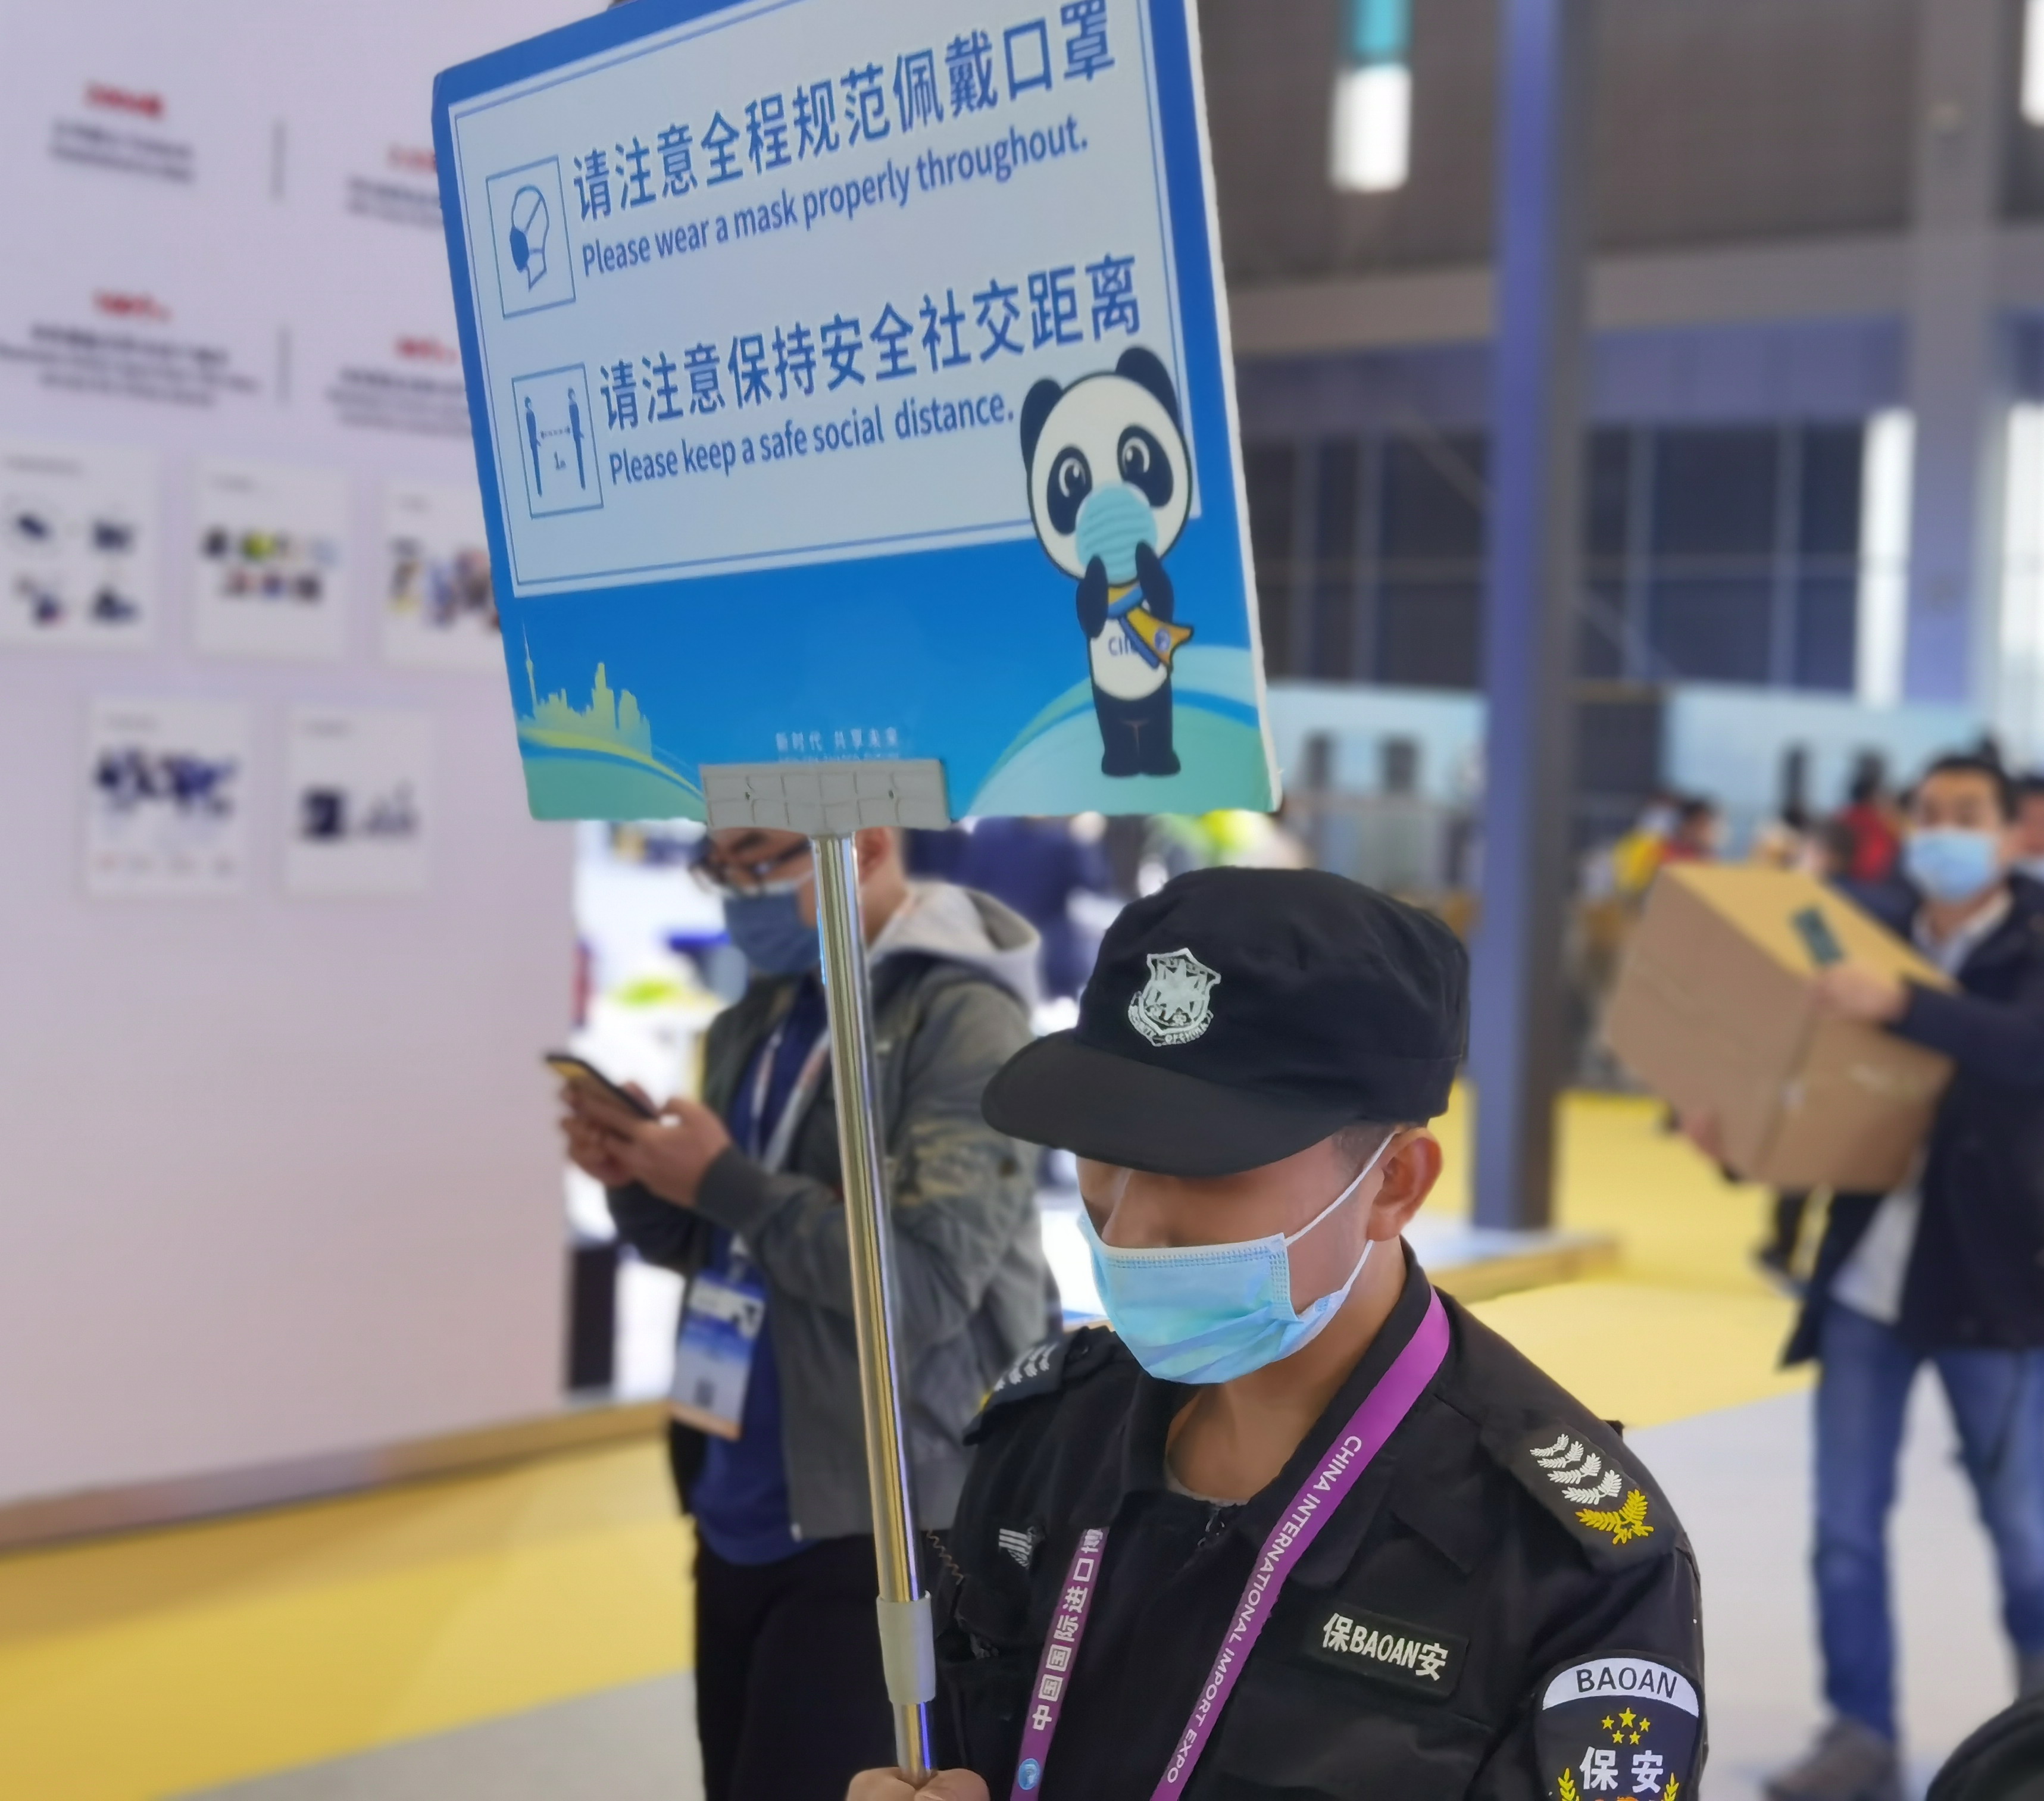 上海展览市场已快速复苏 疫情之下创造会展新价